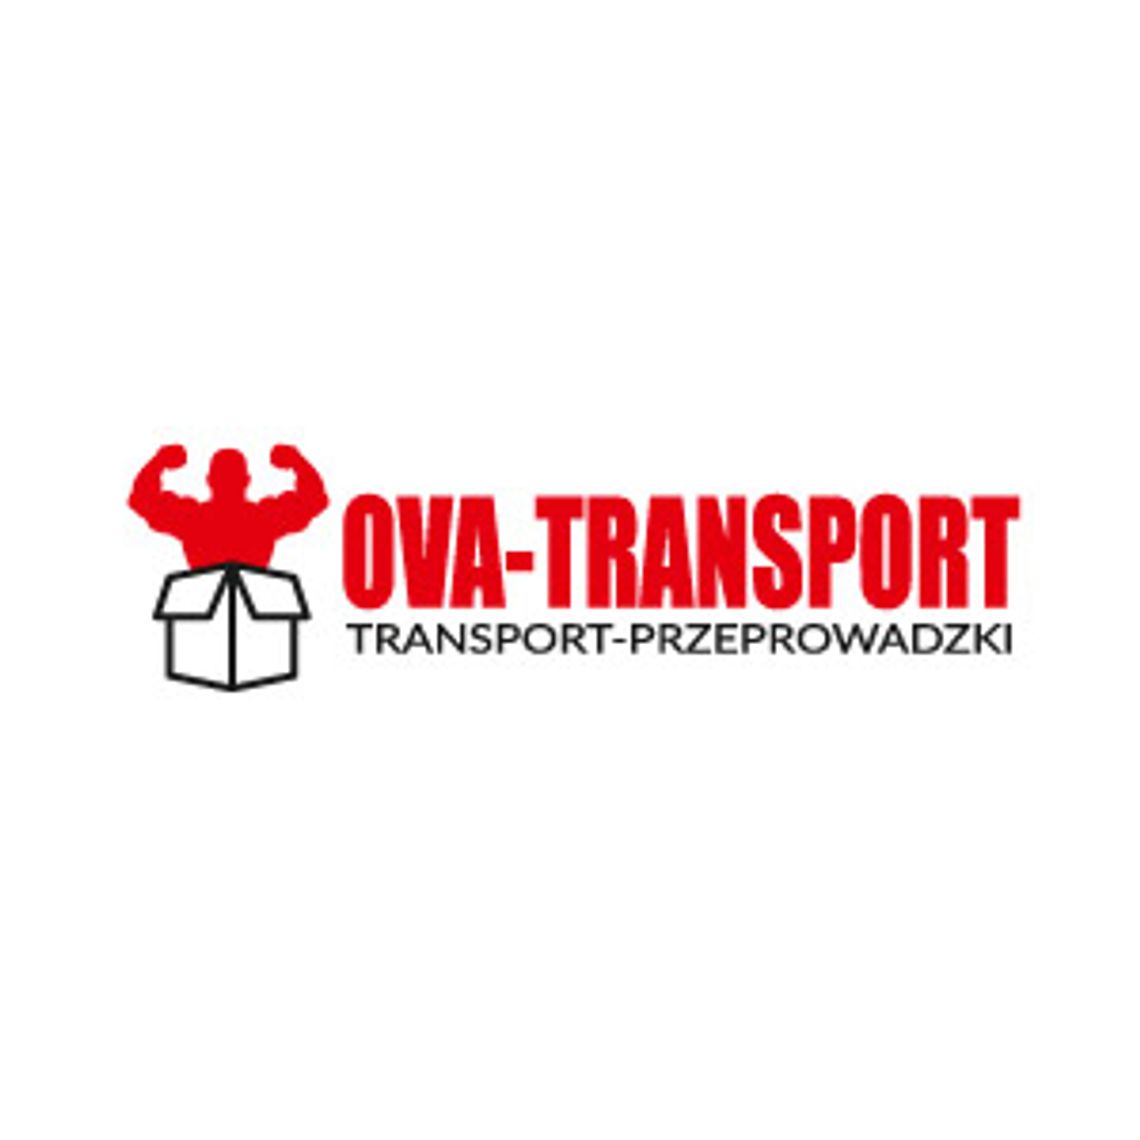 Przeprowadzki i transport Wrocław | OVA-TRANSPORT